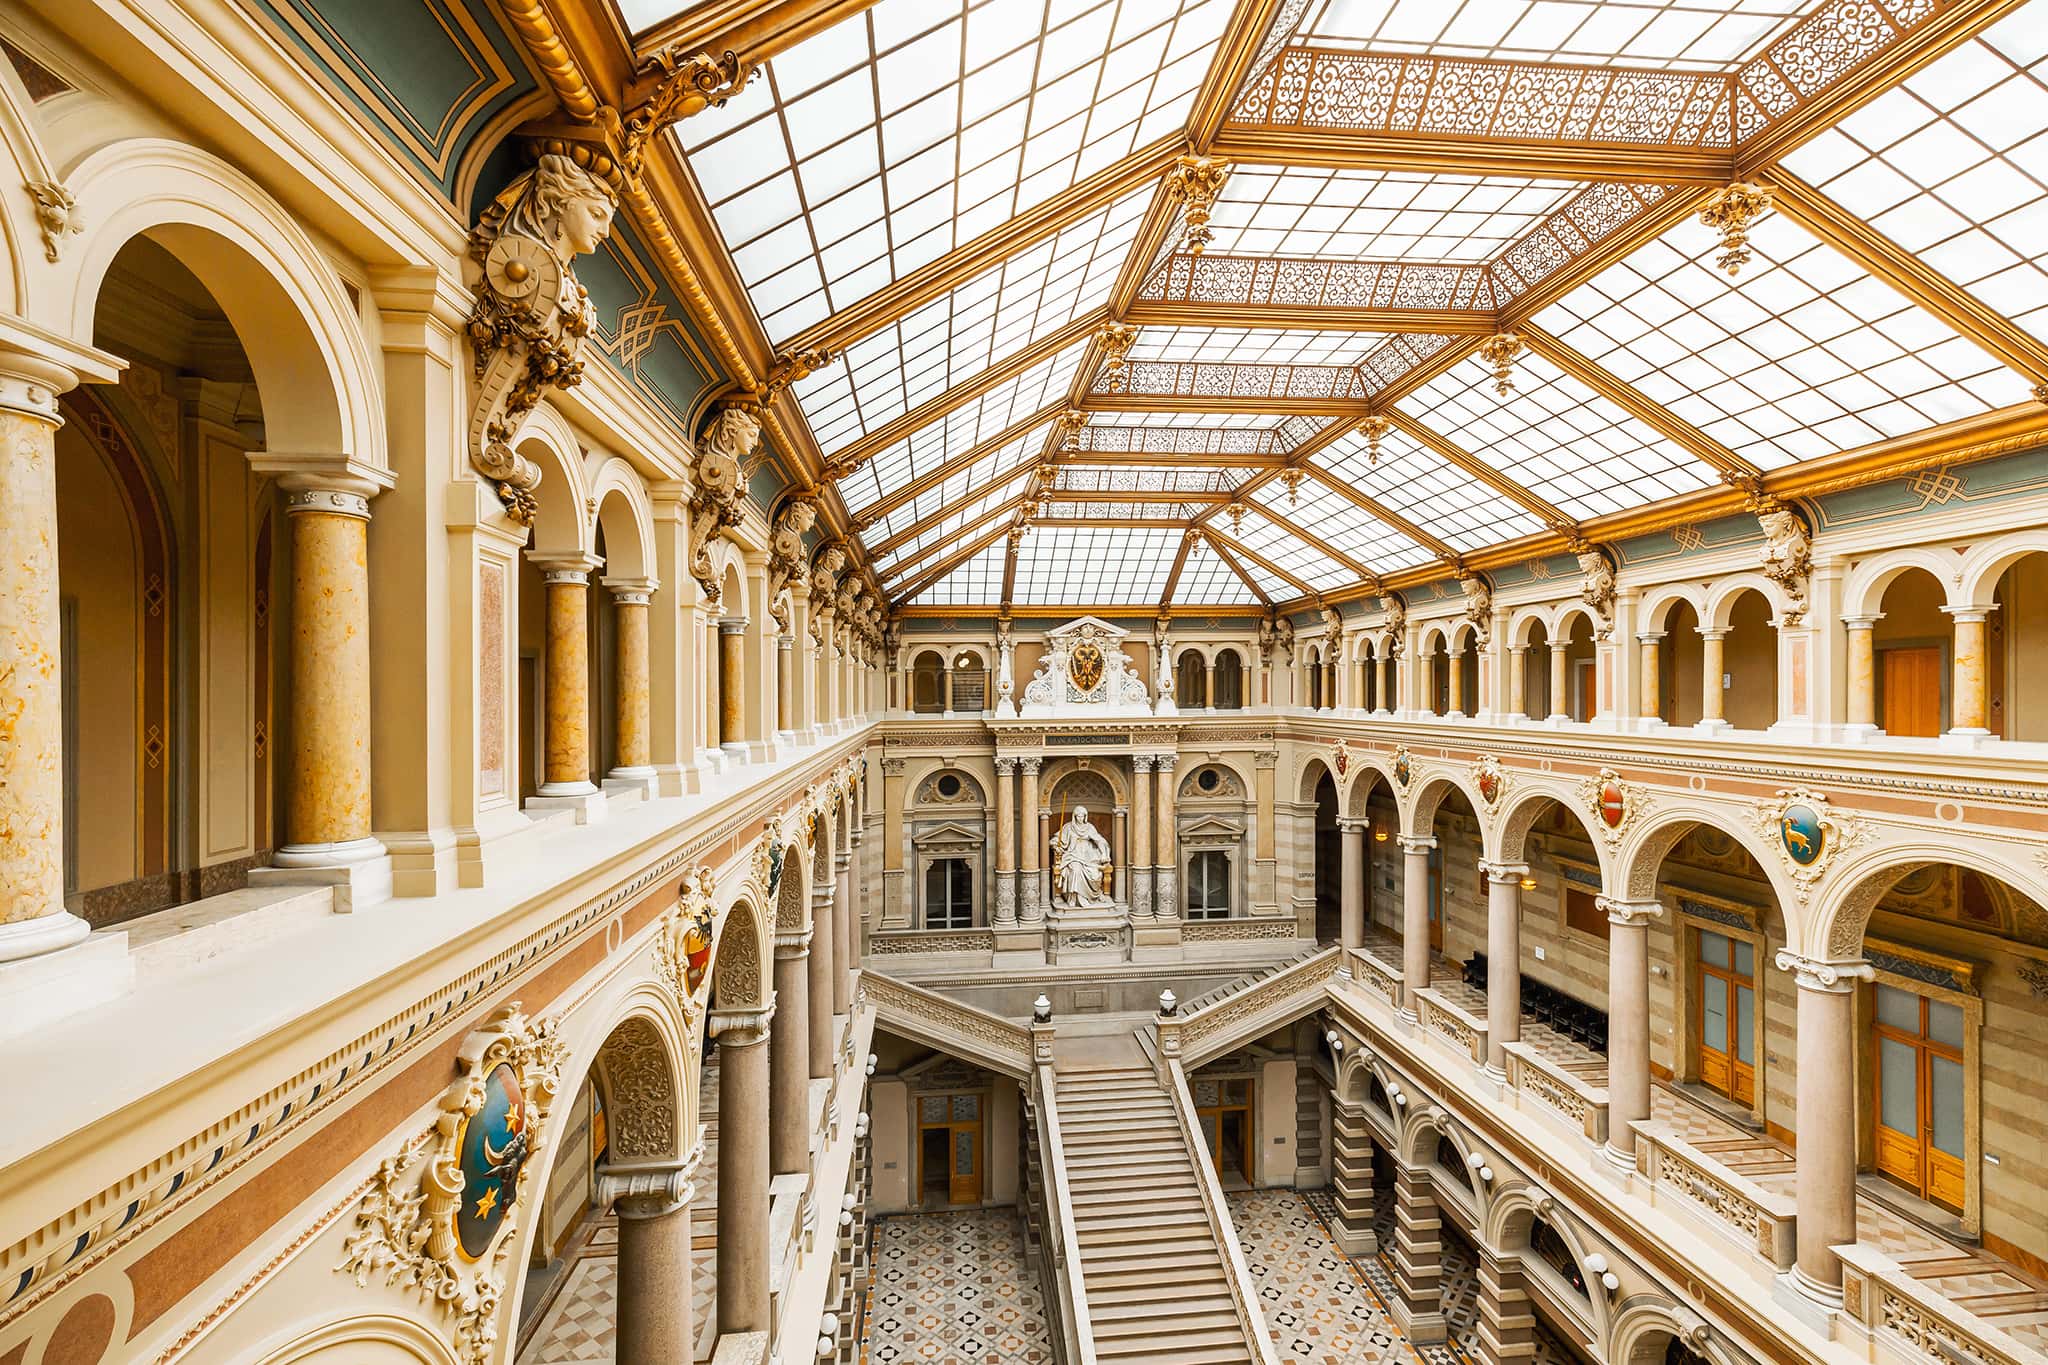 Justizpalast Wien in Österreich – Das Gebäude wurde von 1875 bis 1881 im Stil der Neorenaissance erbaut.